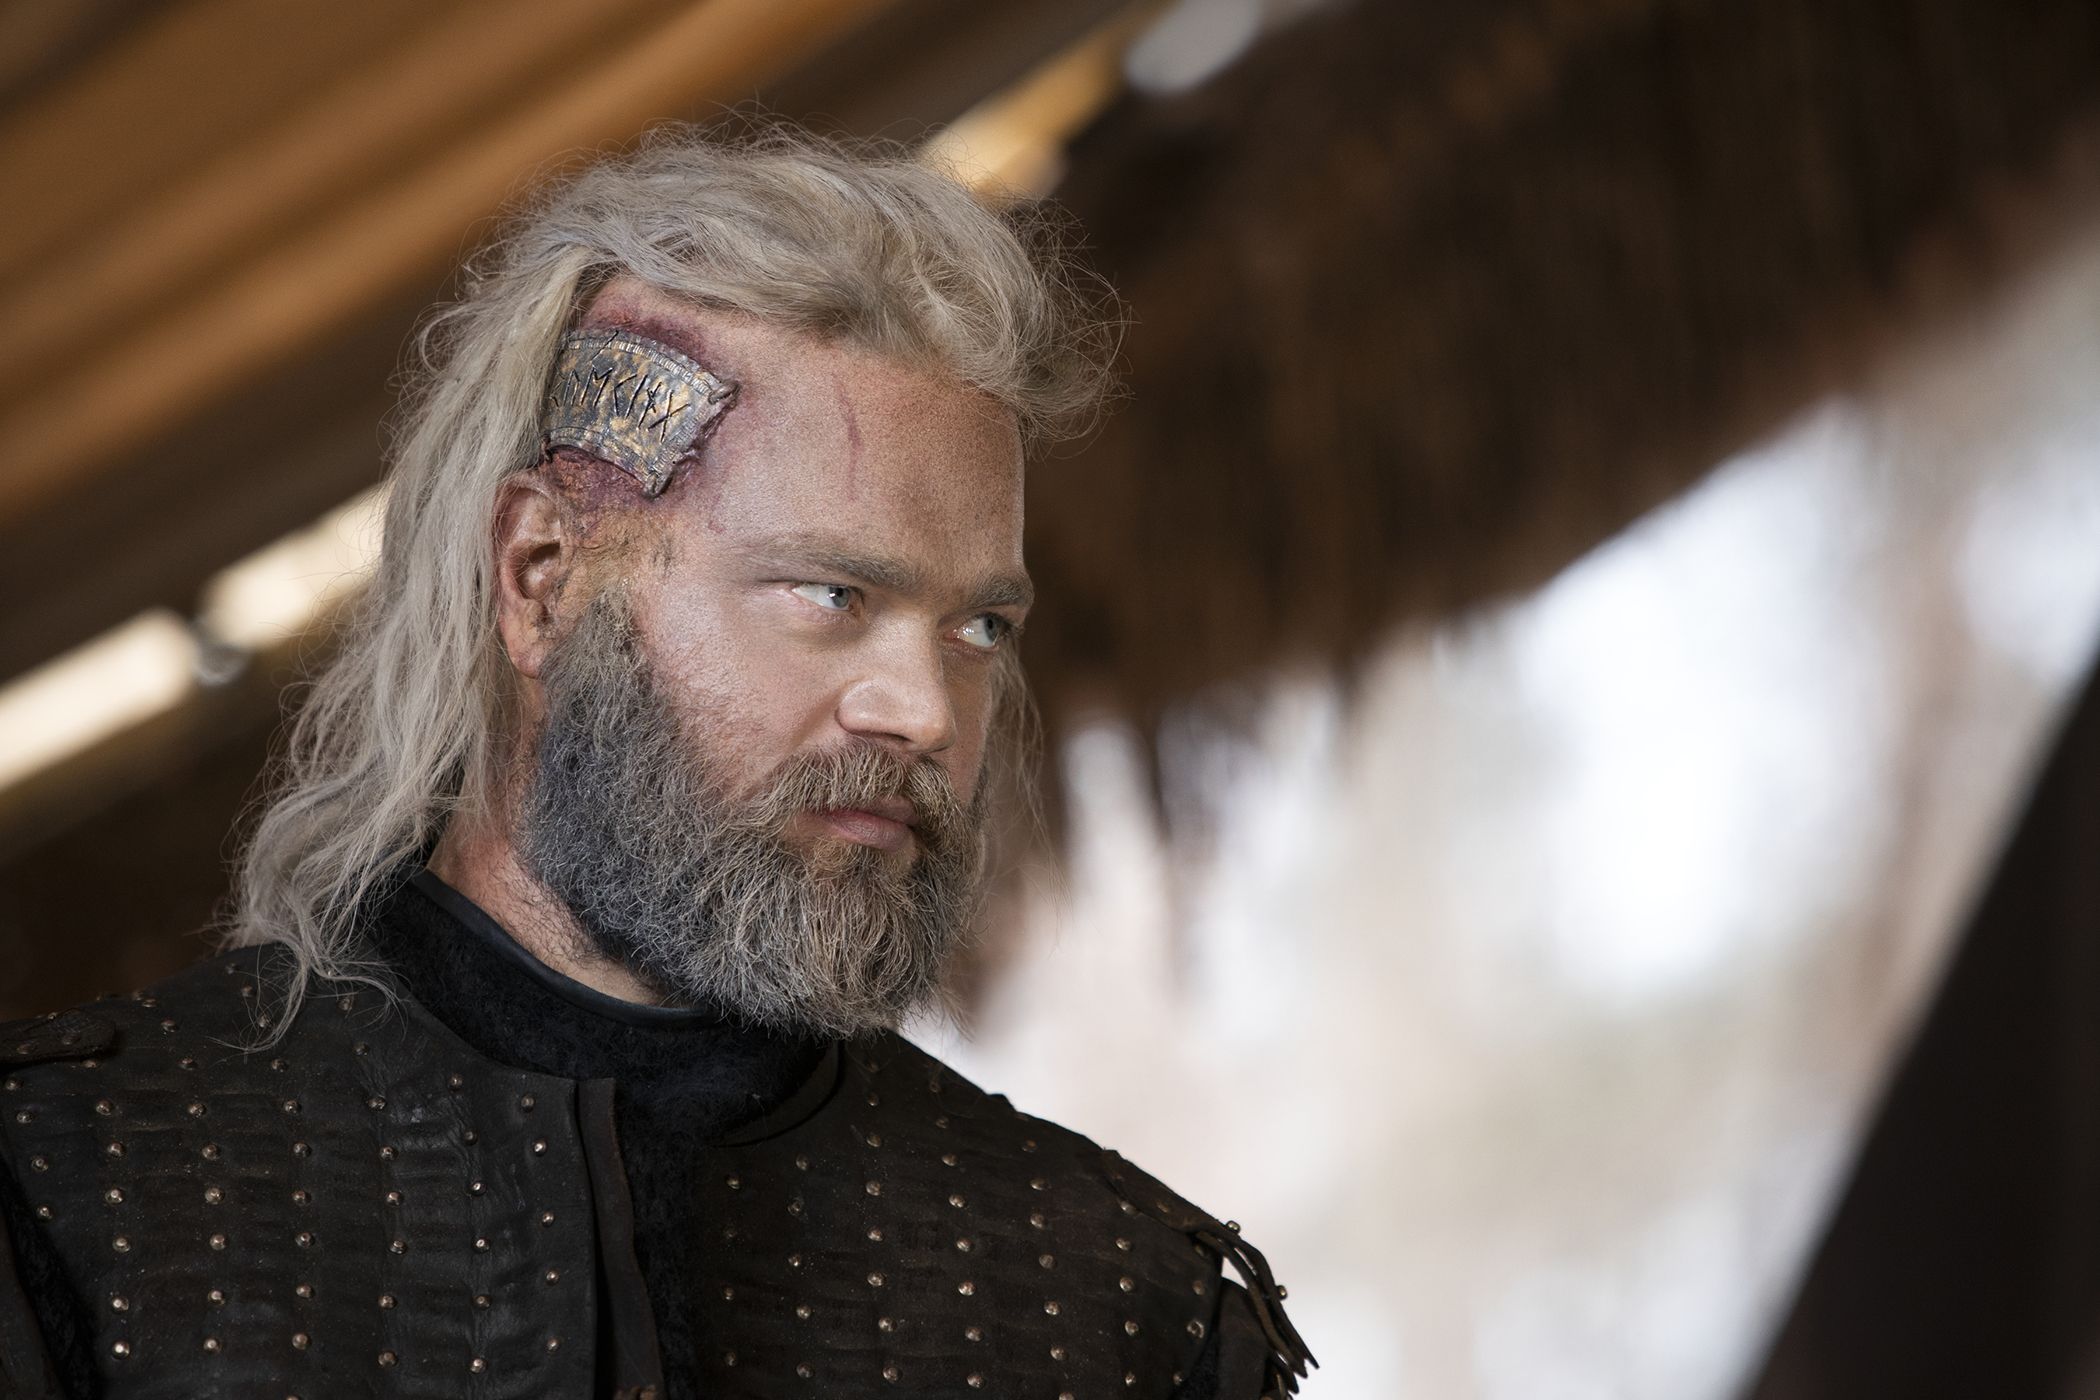 Lançamentos da Netflix em fevereiro de 2022: Vikings Valhalla e De